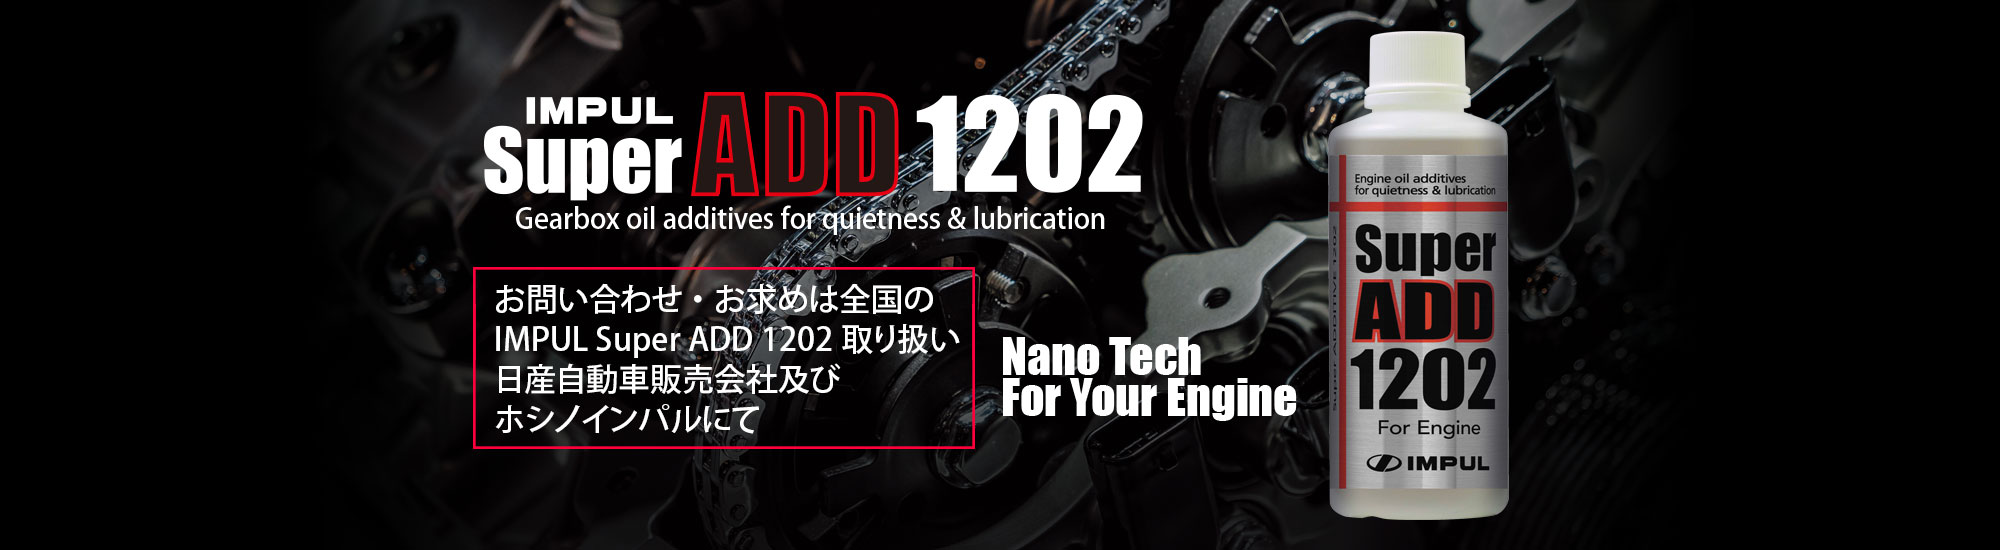 インパルsuper ADD1202/for Engine